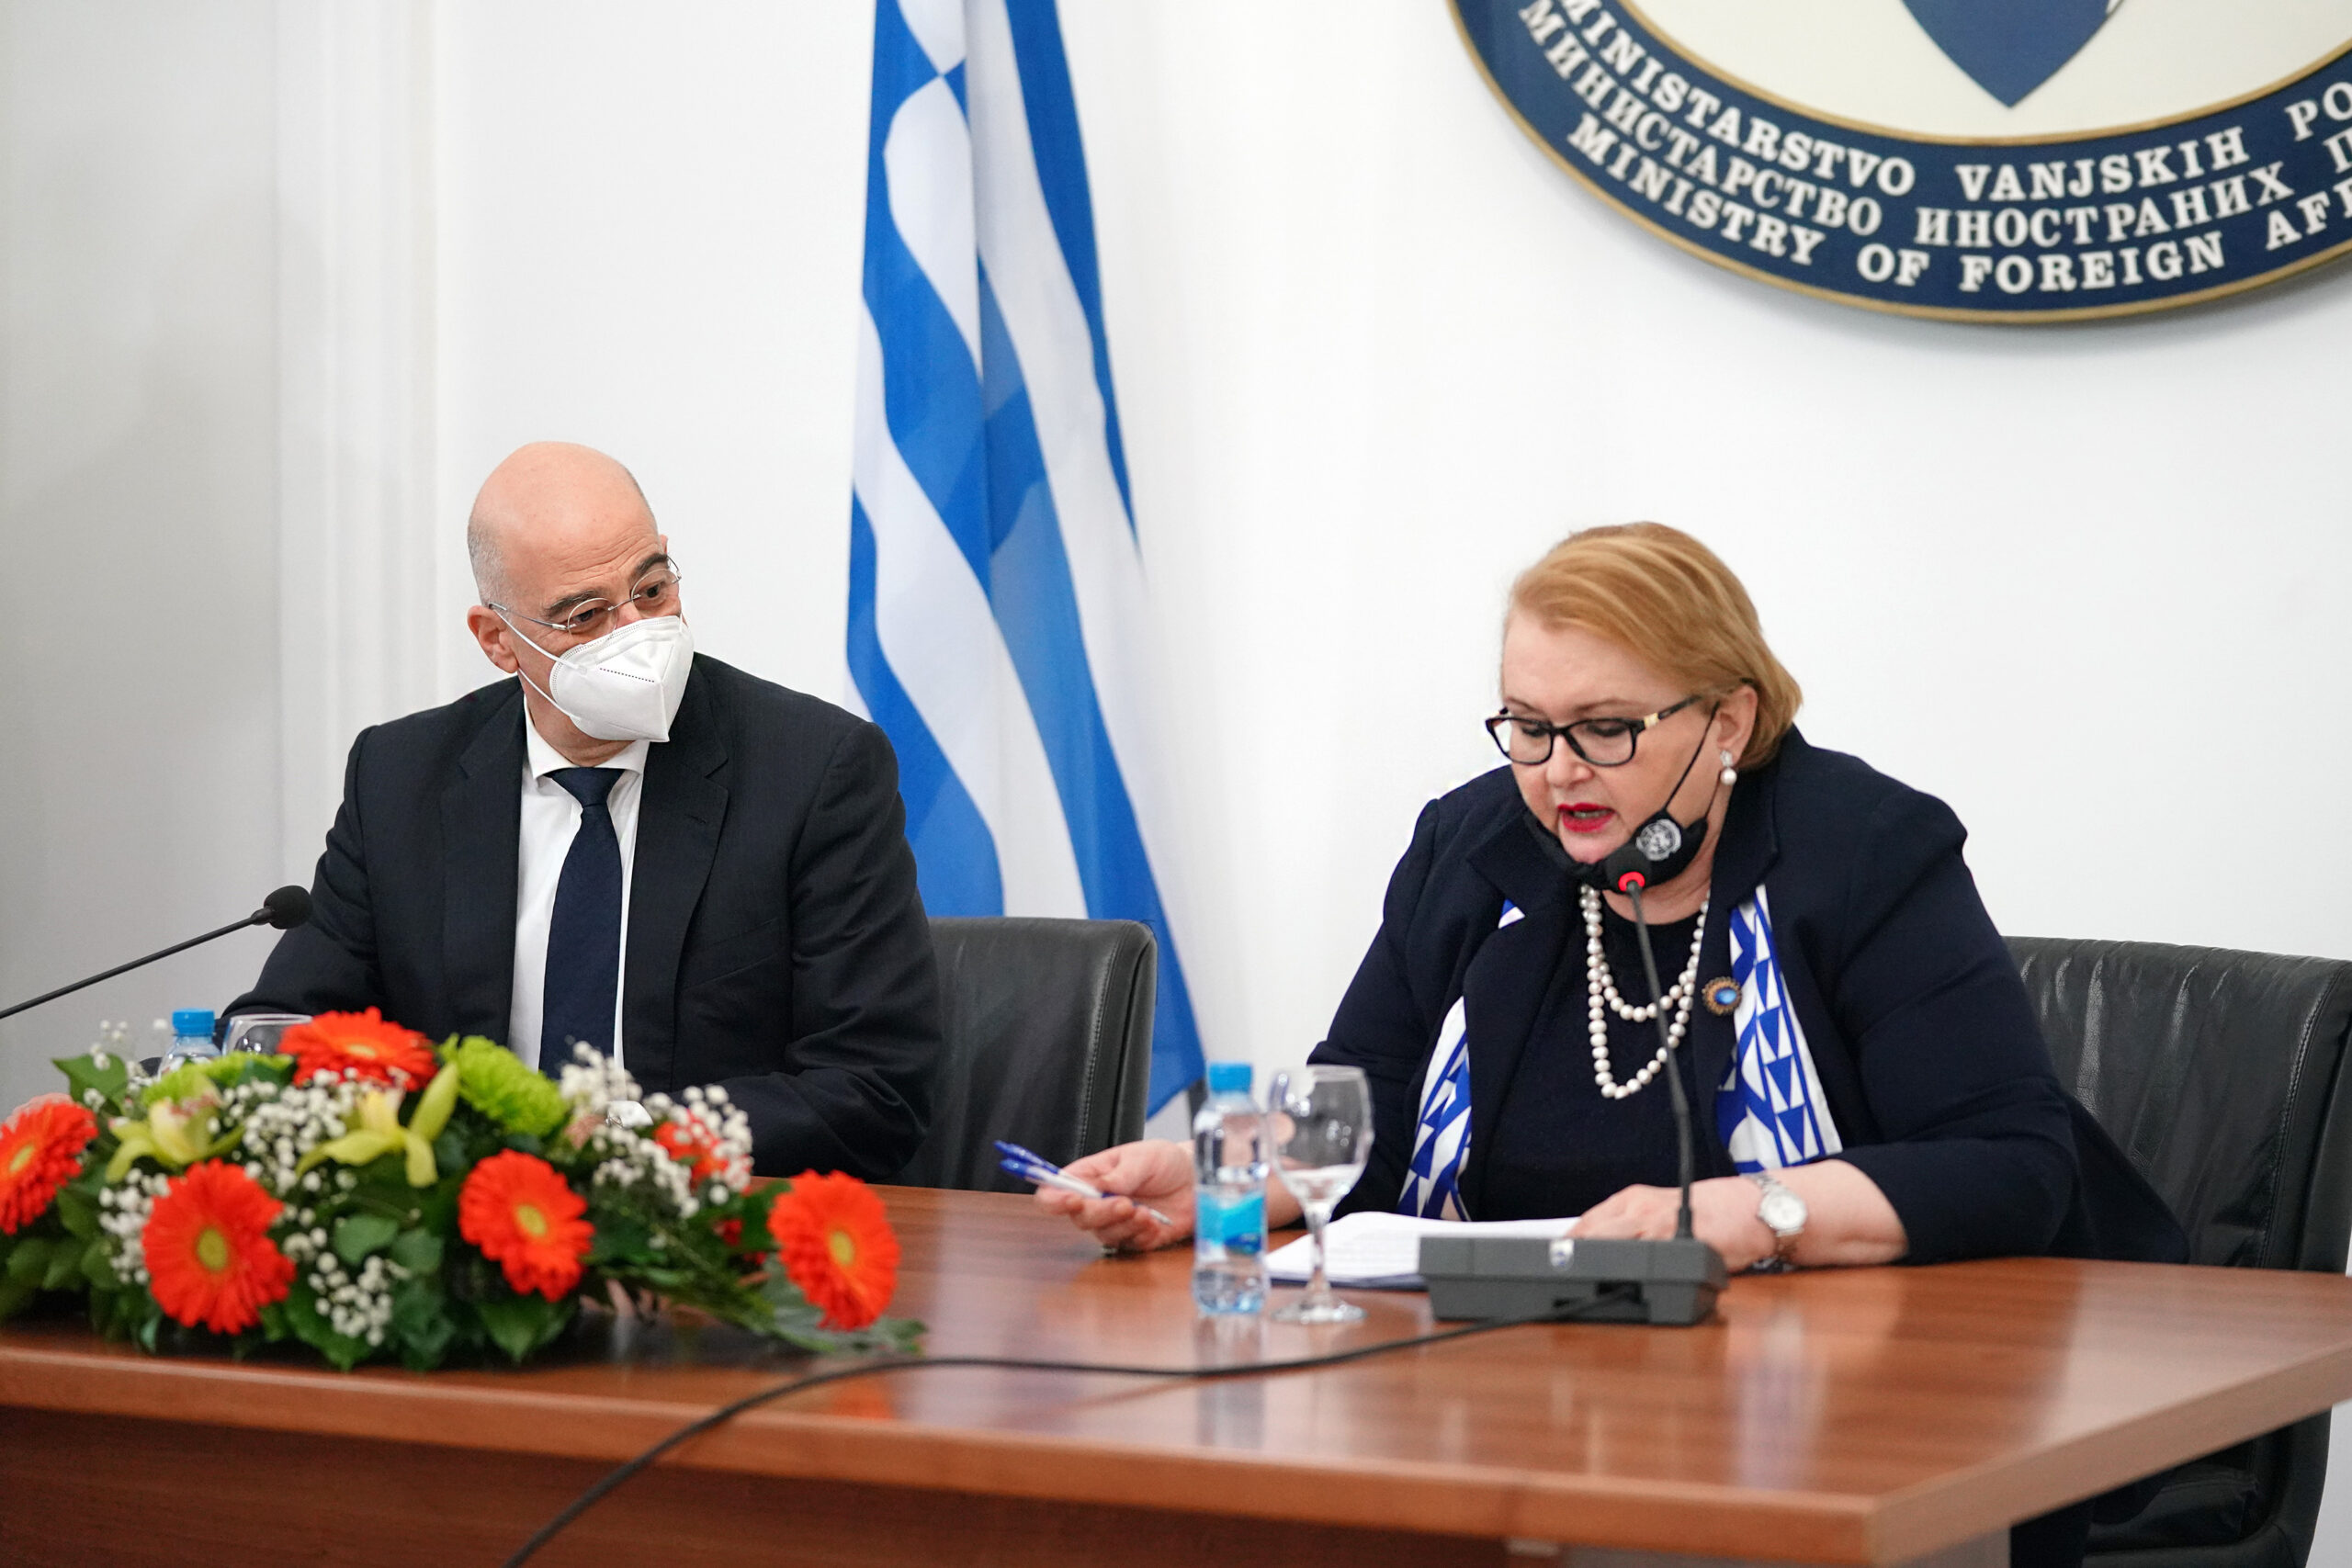 Επίσκεψη Υπουργού Εξωτερικών, Νίκου Δένδια, στη Βοσνία και Ερζεγοβίνη. Συναντήθηκε στο Σεράγεβο με την ομόλογό του, Δρ. Bisera Turković, Αναπληρώτρια Πρόεδρο του Συμβουλίου Υπουργών και Υπουργό Εξωτερικών της Βοσνίας και Ερζεγοβίνης, ( Σαράγεβο, 29.01.2021)